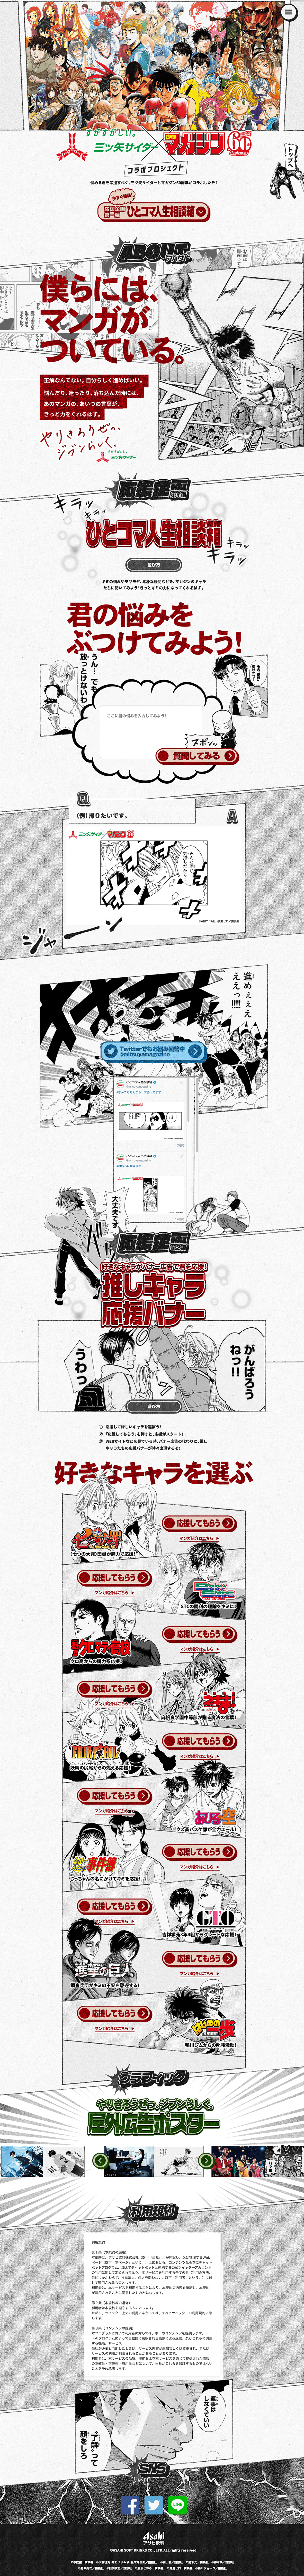 三ツ矢サイダー マガジン60周年コラボプロジェクト Iro 2 Bookmark アニメウェブデザインまとめサイト